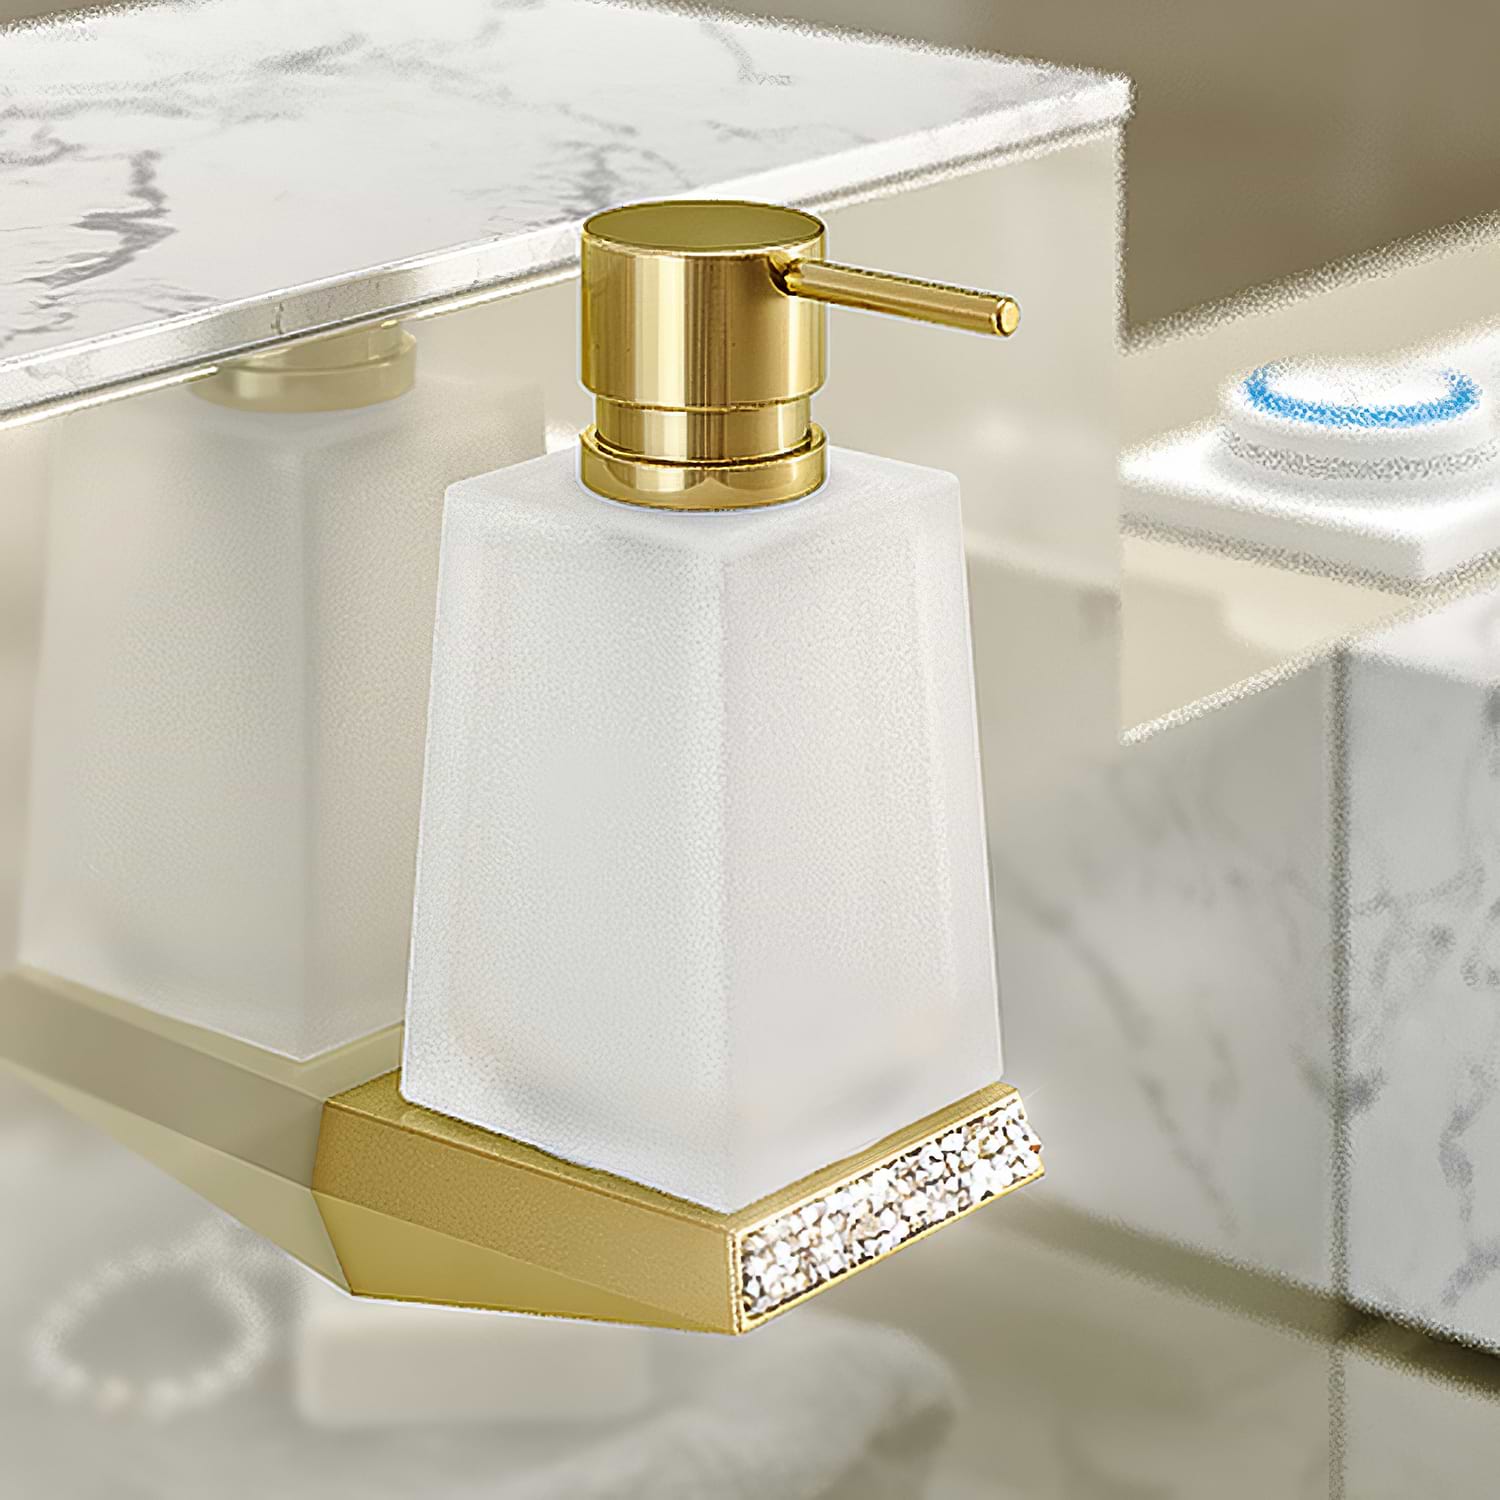 Swarovski Soap Dispenser Gold - Hyperion Tiles